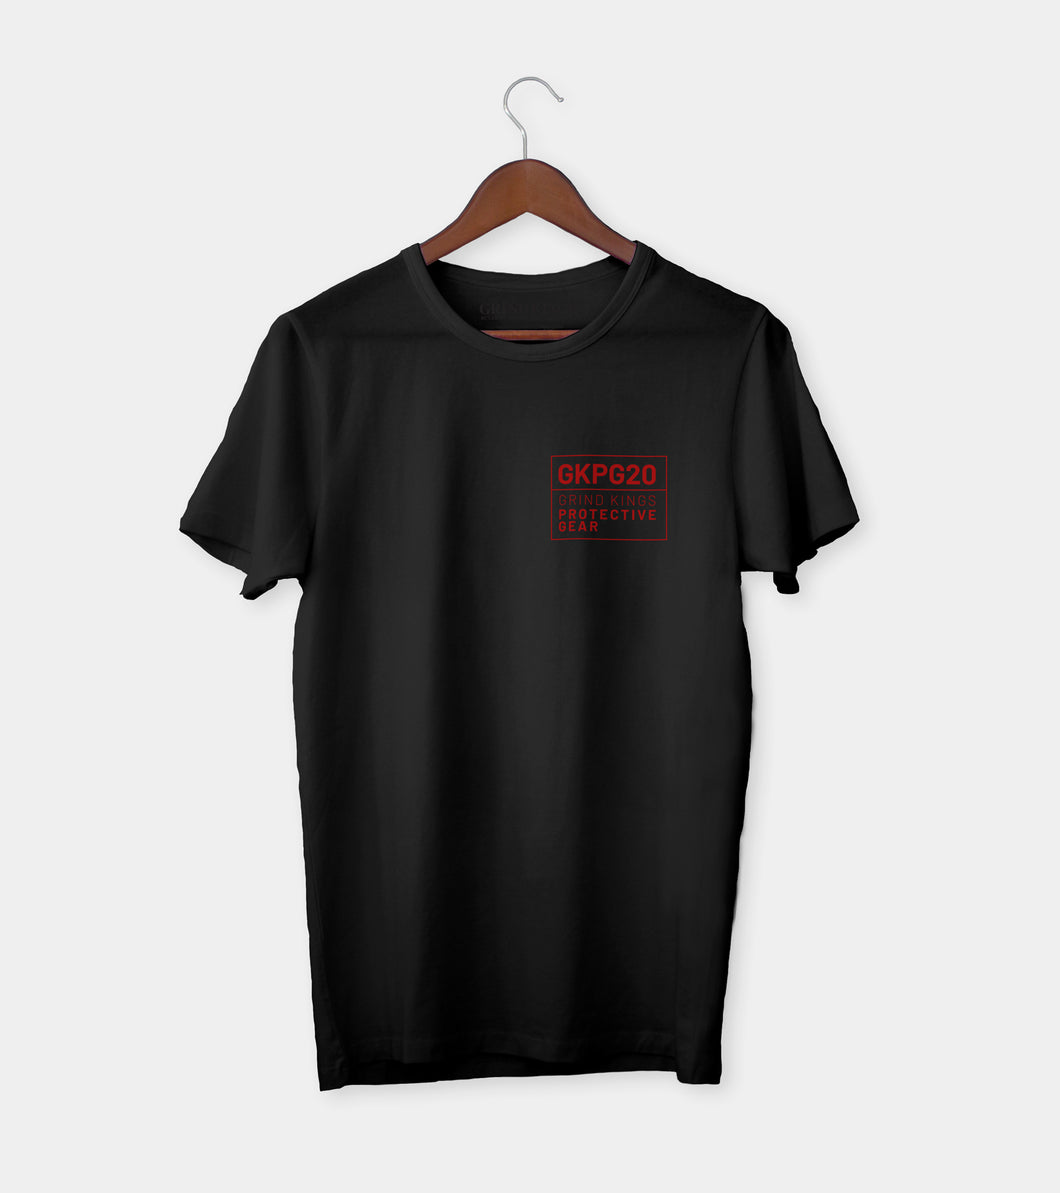 GKPG20 Logo Basic T-shirt - Black w/red